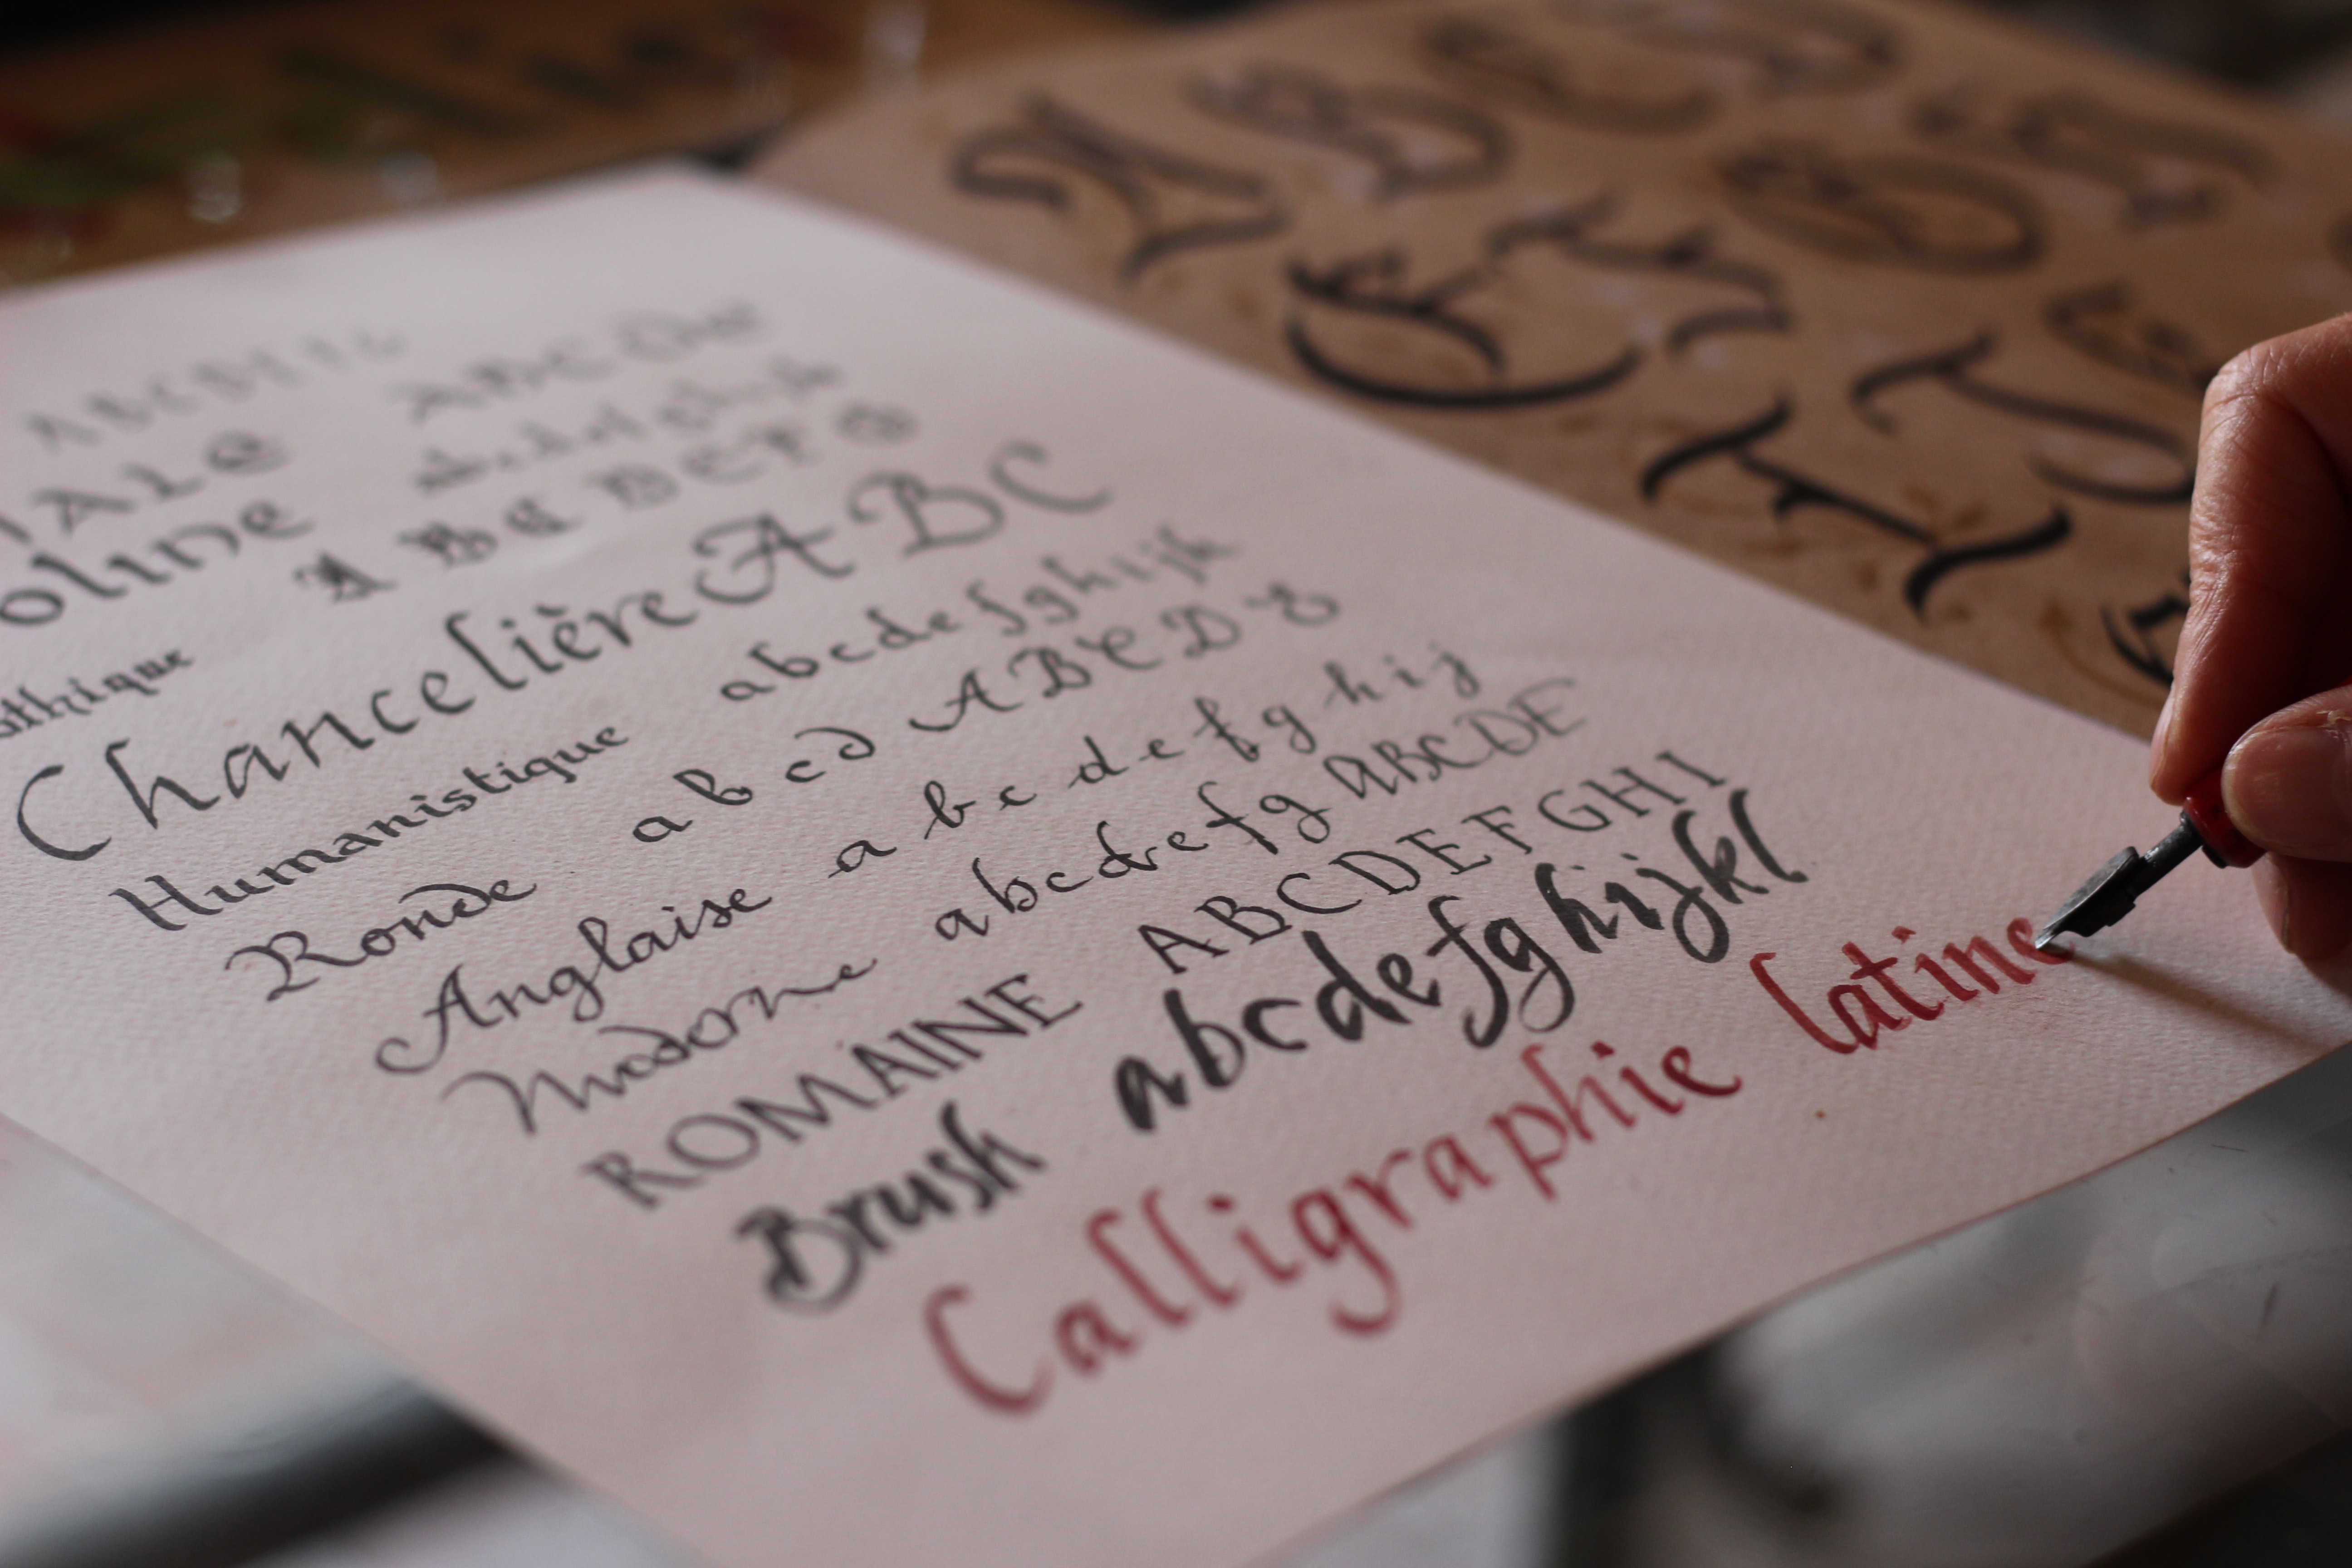 Kalligraphie lernen macht Spaß. Kleine Gruppen im wunderschönen Atelier der Kalligraphin J.Kühn in Hanau.
Quelle Foto:Photo by Samir Bouaked on Unsplash